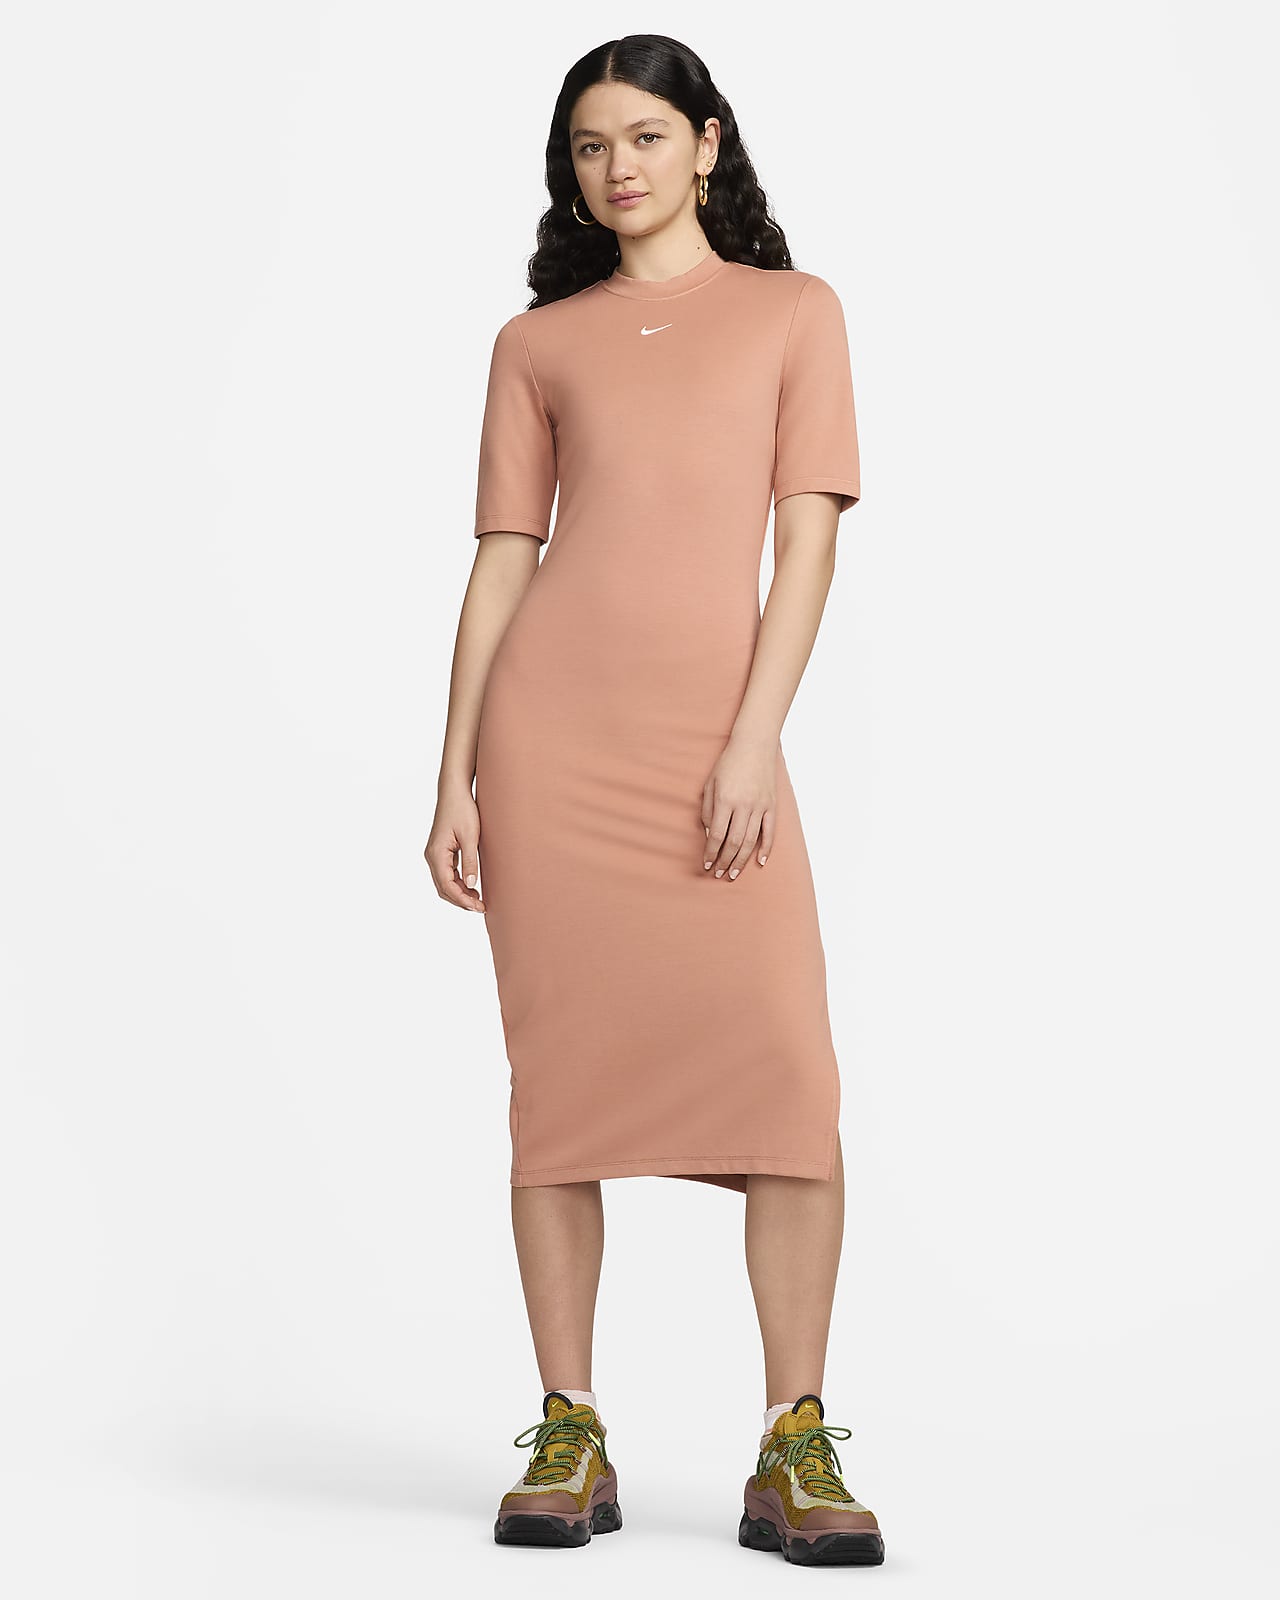 Nike Sportswear Essential Women's Tight Midi Dress